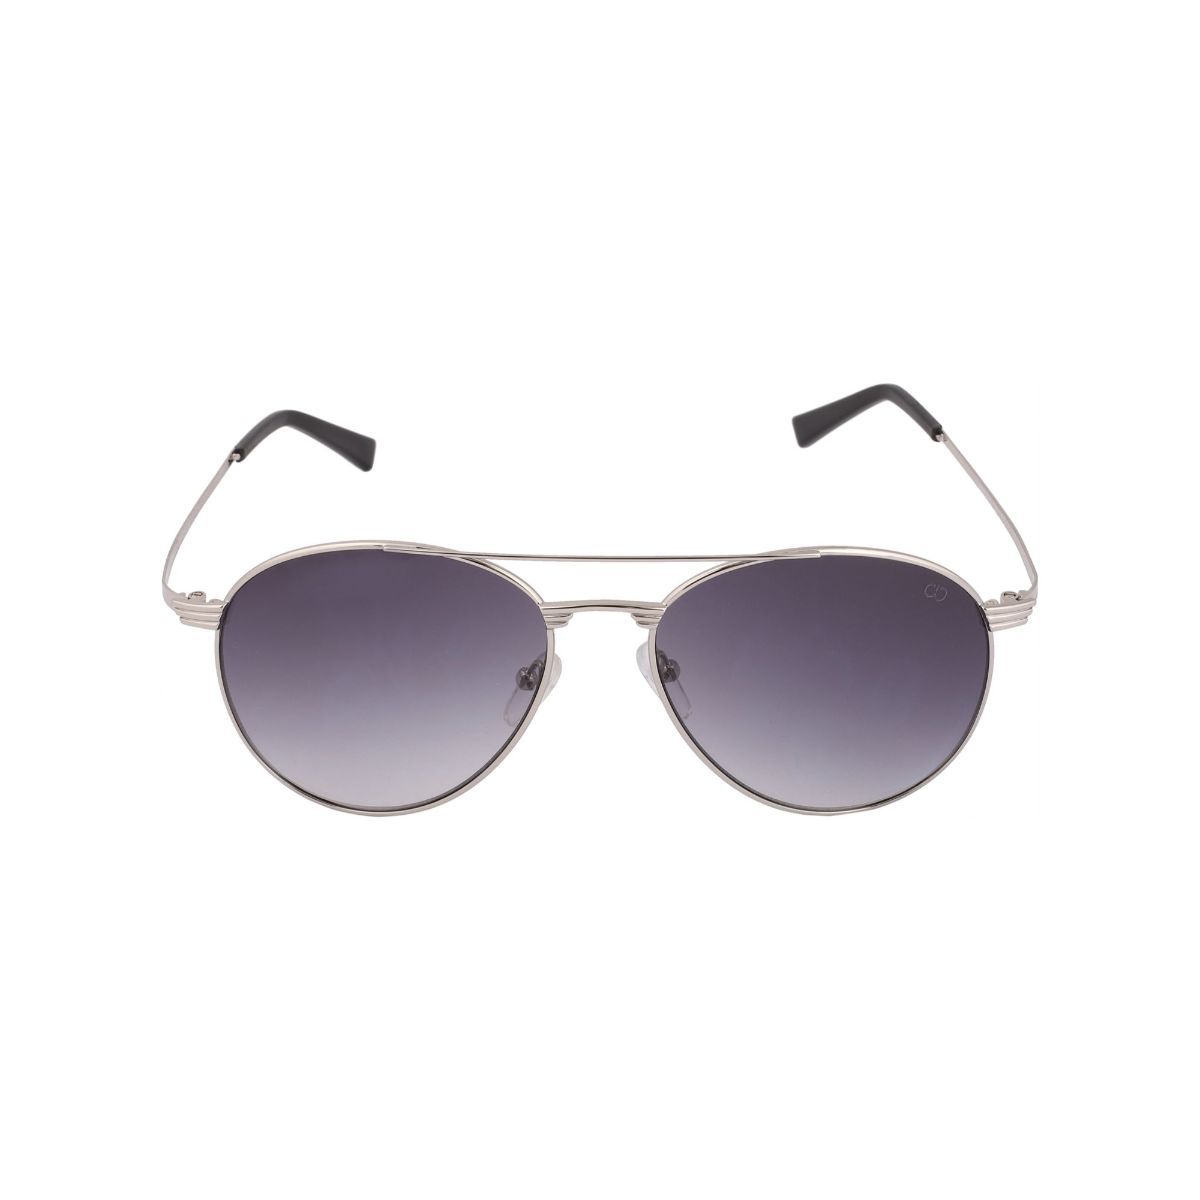 Buy Opium Eyewear Men Black Sports Sunglasses with UV Protection  (OP-1805-C03) online